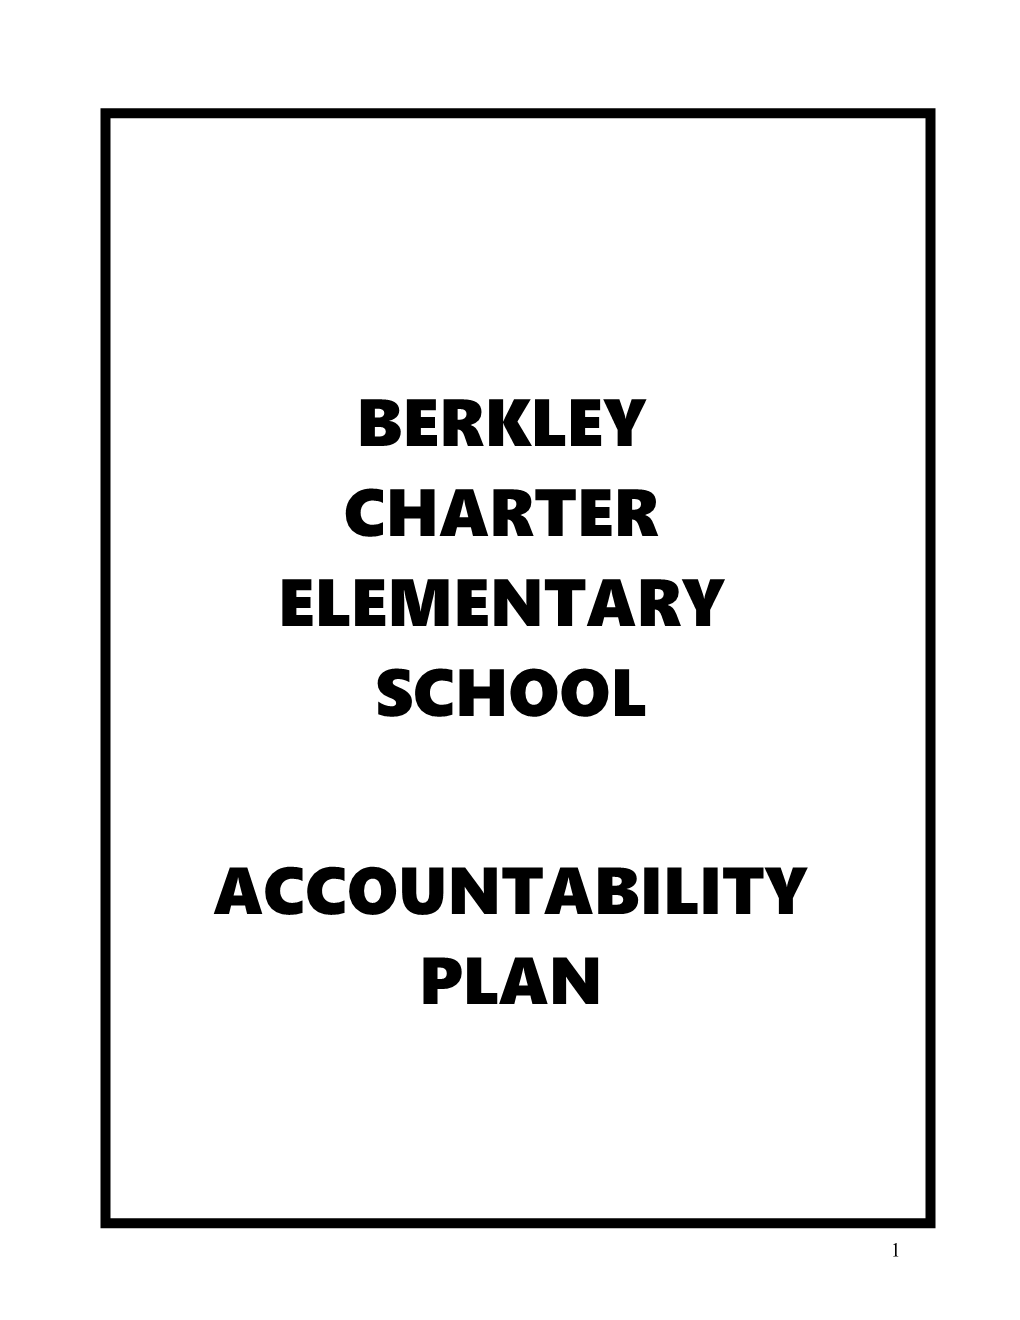 Berkley Charter Elementary School